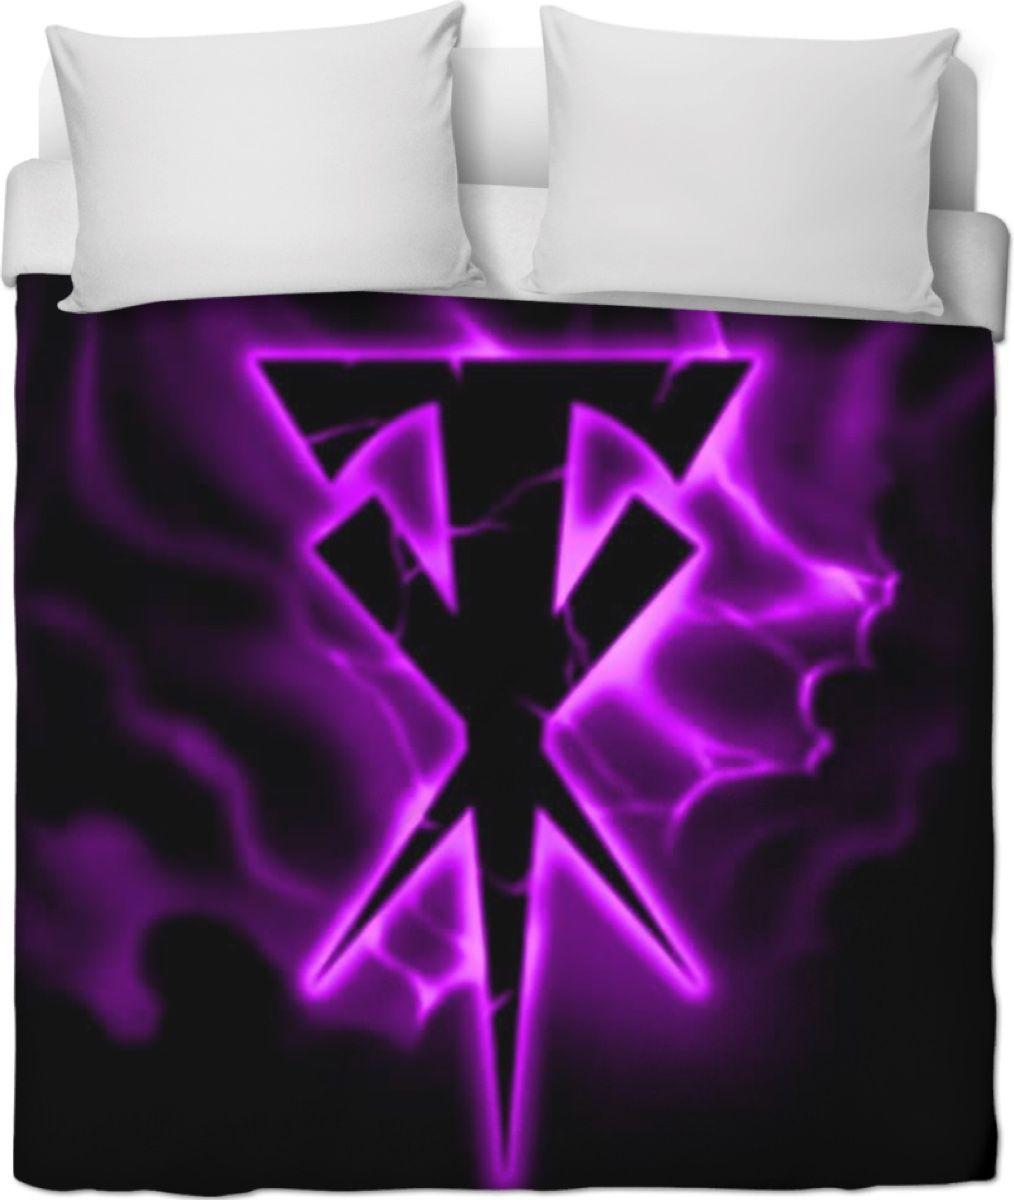 Undertaker Logo - Undertaker Logo Duvet Covers/ Blankets And Pillow Cases